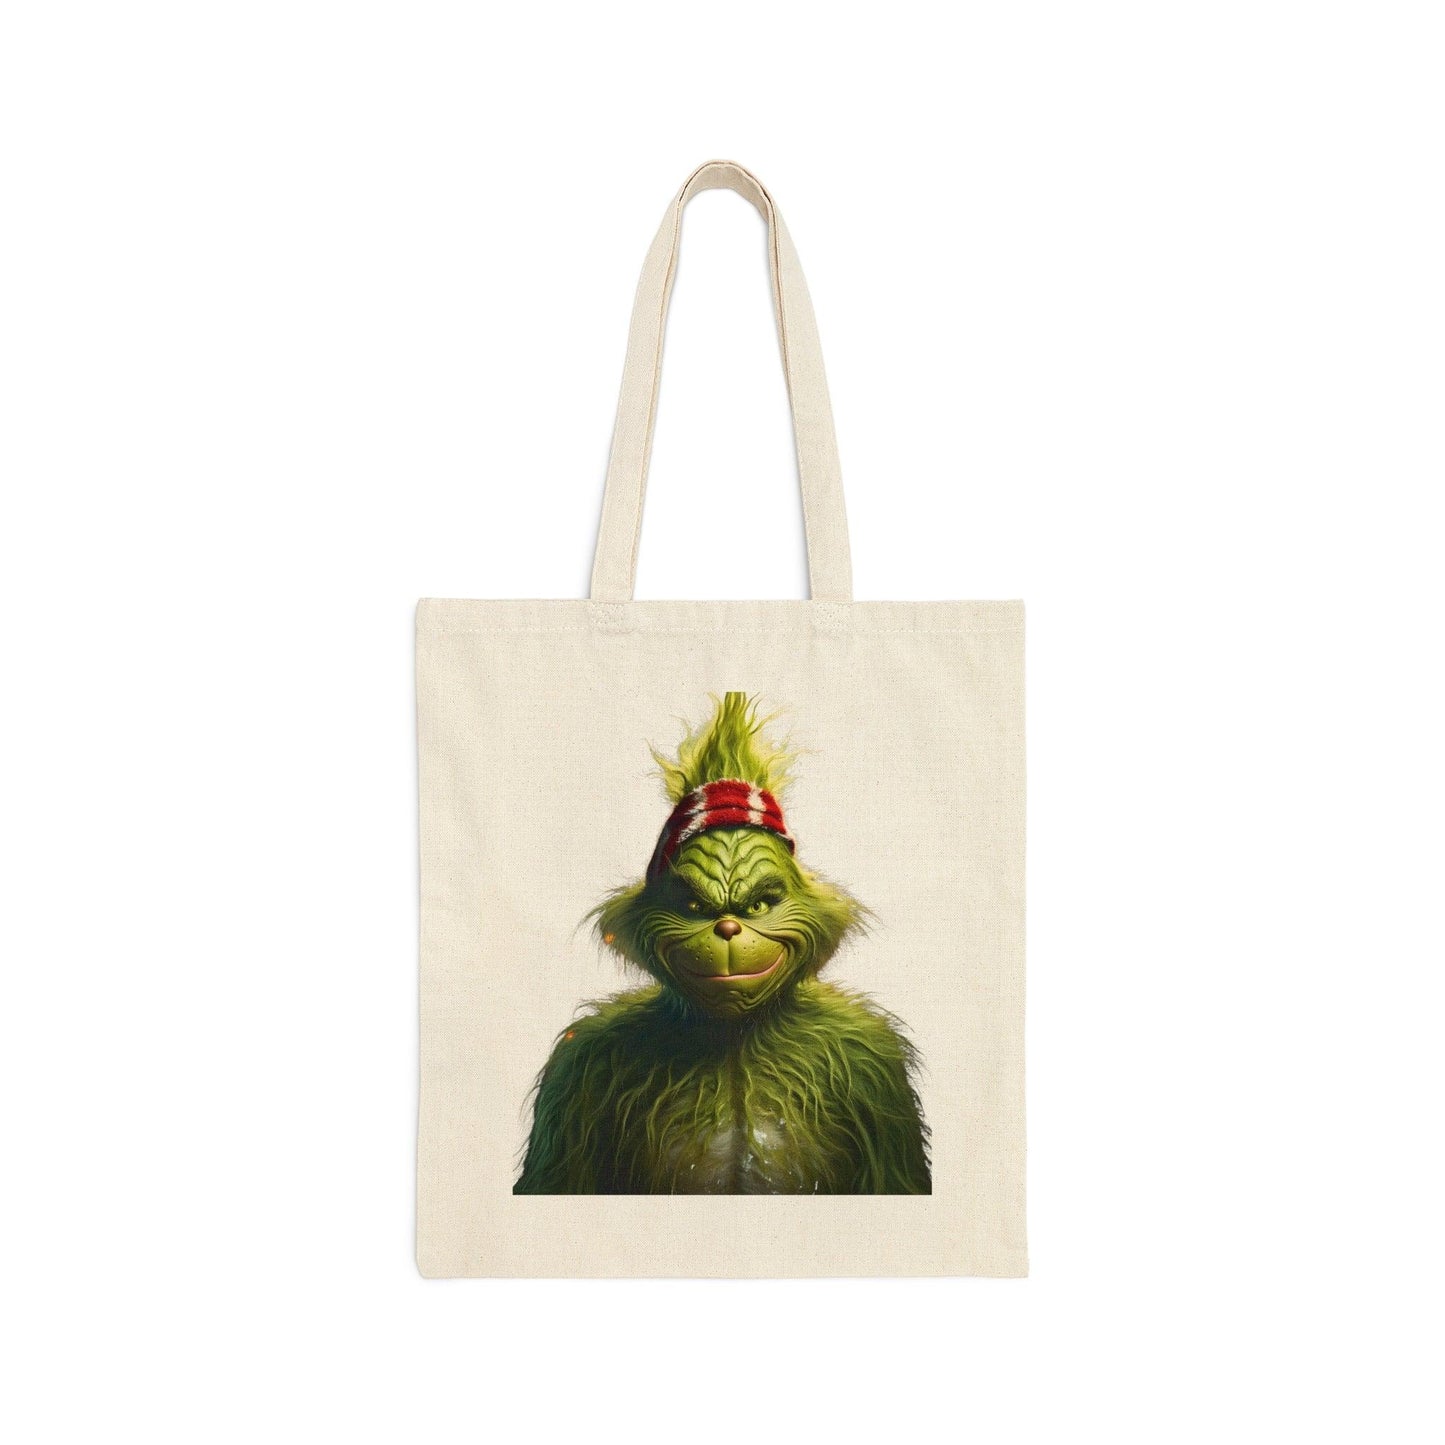 Grinch Tote Bag Christmas Bag Christmas Tote Bag The Grinch Bag Canvas Tote Bag Shopping Bag Gift For Women Totes Birthday Gift Bag - Giftsmojo